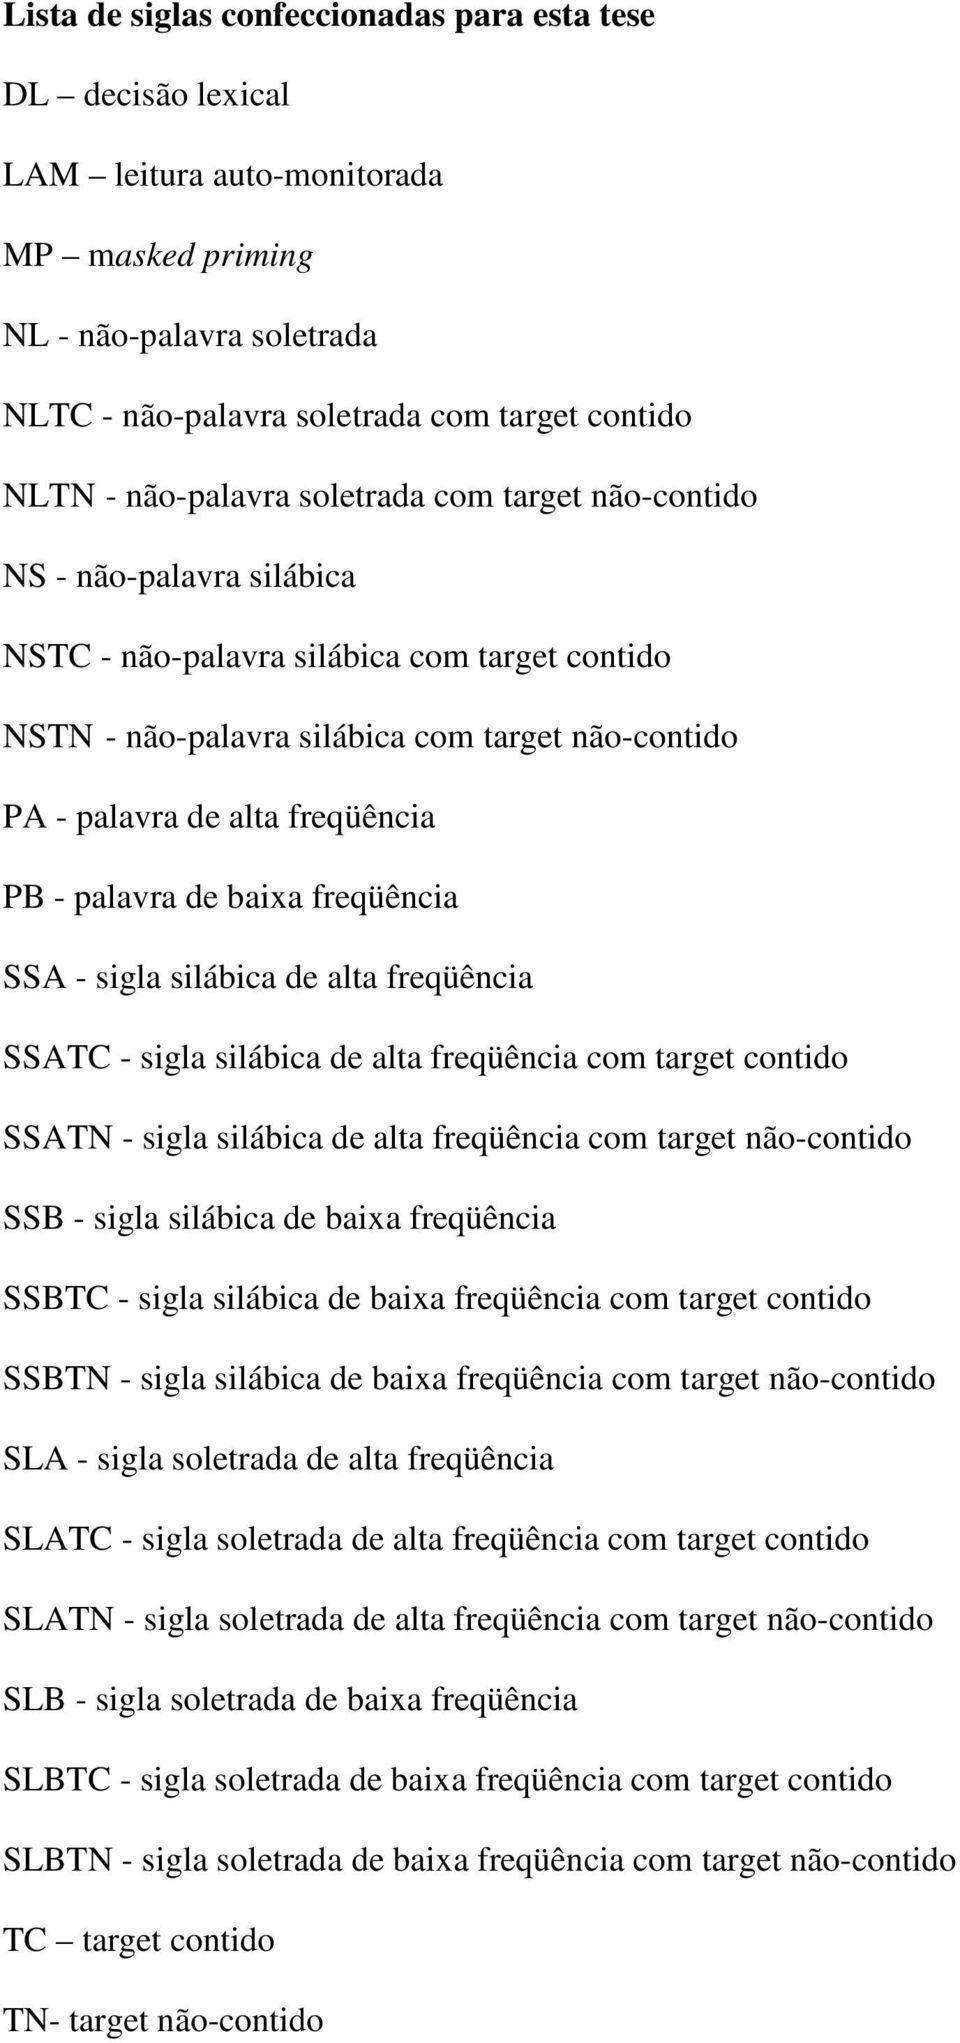 freqüência PB - palavra de baixa freqüência SSA - sigla silábica de alta freqüência SSATC - sigla silábica de alta freqüência com target contido SSATN - sigla silábica de alta freqüência com target